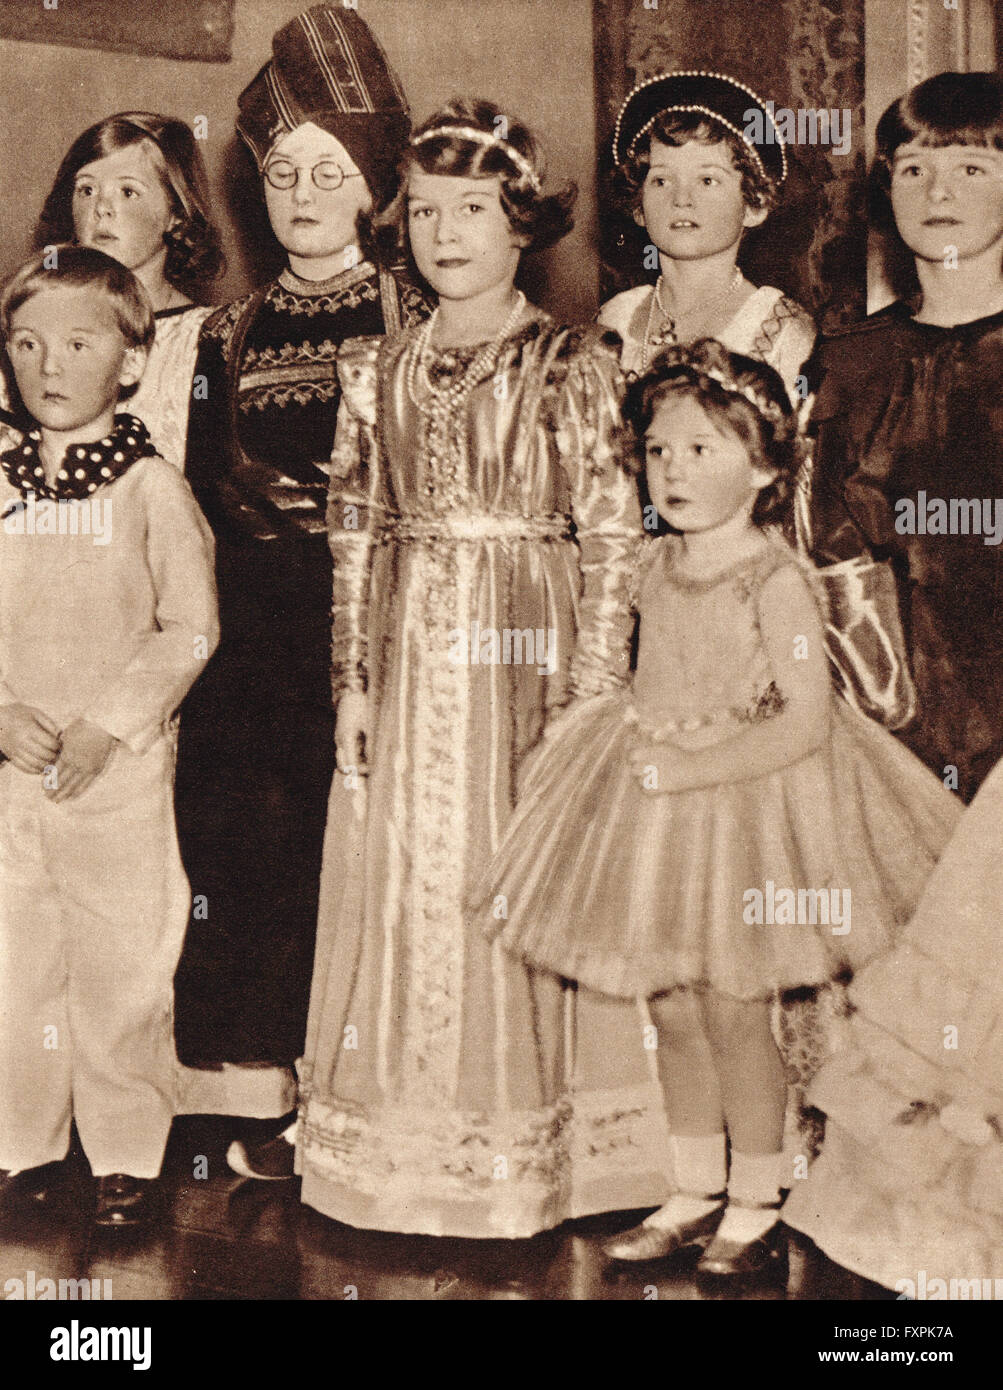 Prinzessin Elizabeth, die Zukunft Königin Elizabeth II., auf einem Kostümfest mit ihrer Schwester Margaret 1934 Stockfoto